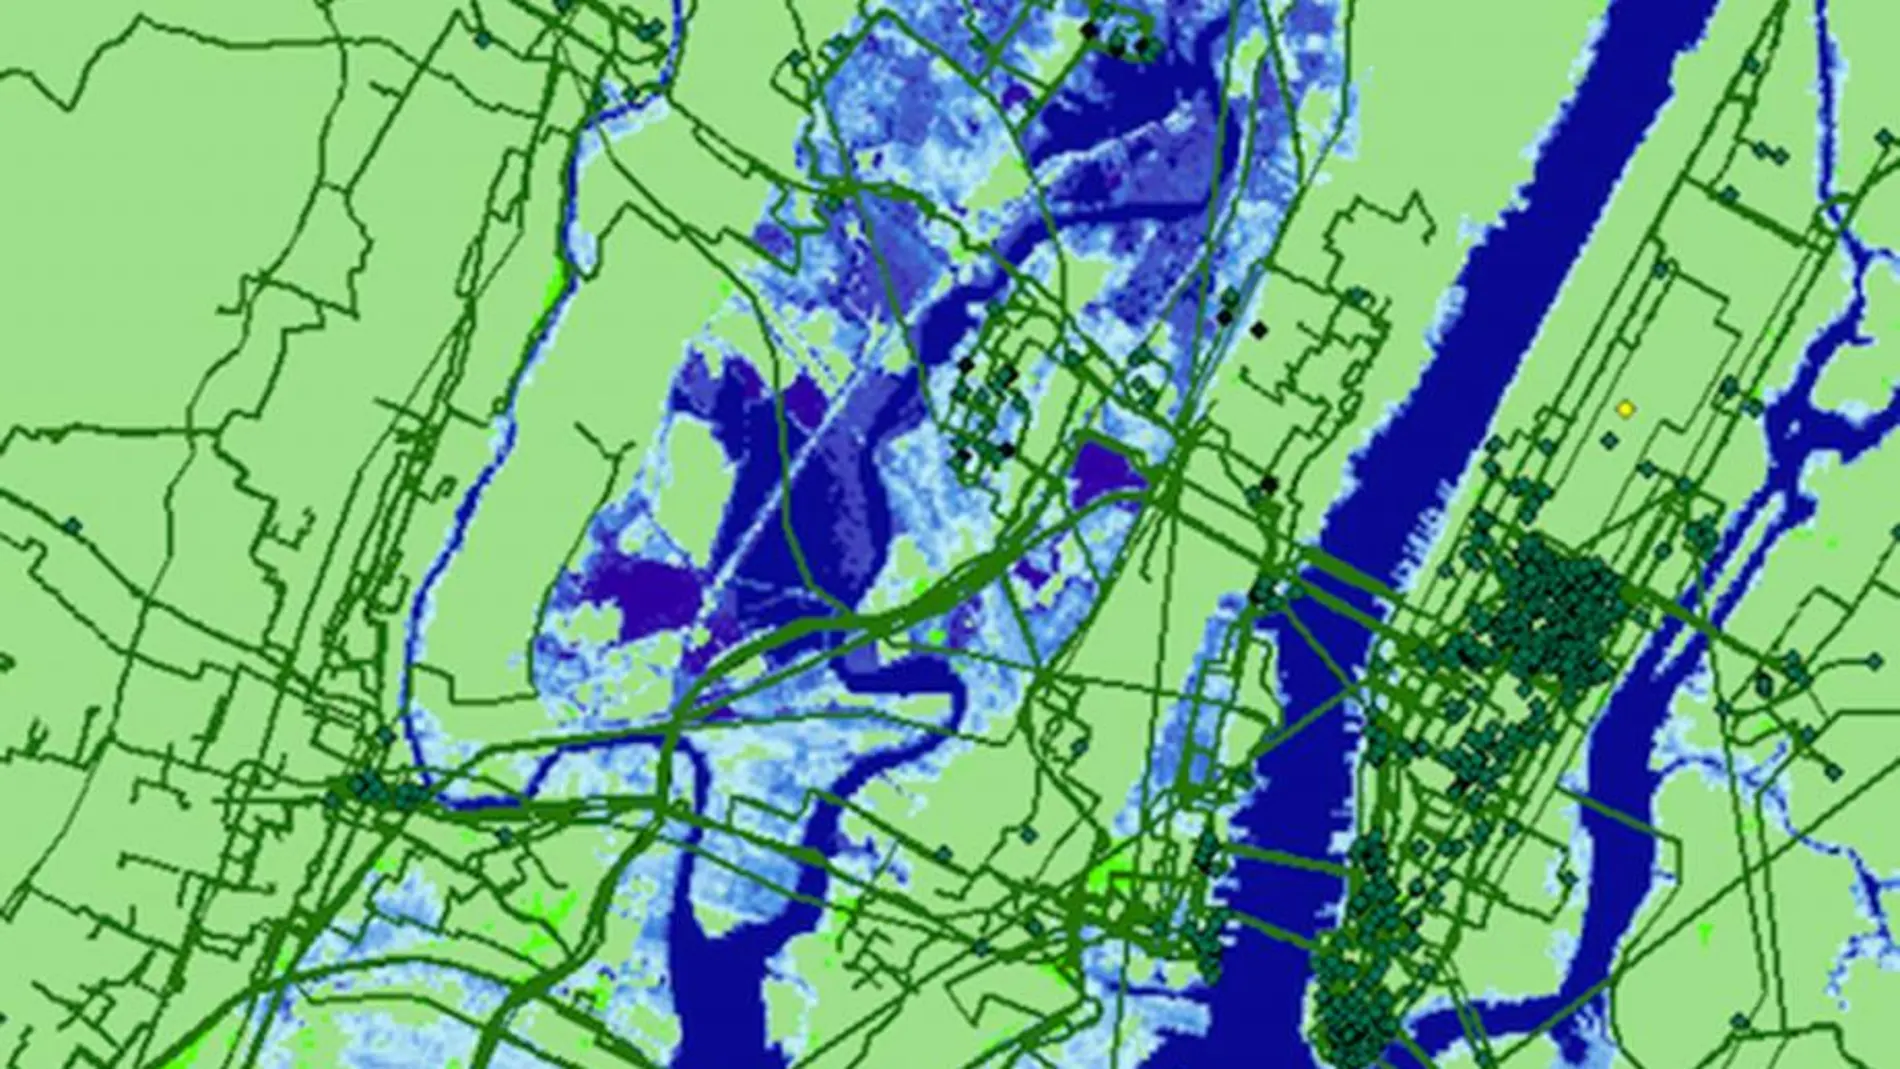 Proyecciones de la inundación por agua de mar en Nueva York en 2033 y su efecto en las infraestructuras de Internet. Las zonas azules indican las partes de la ciudad que quedarán sumergidas. Paul Barford.